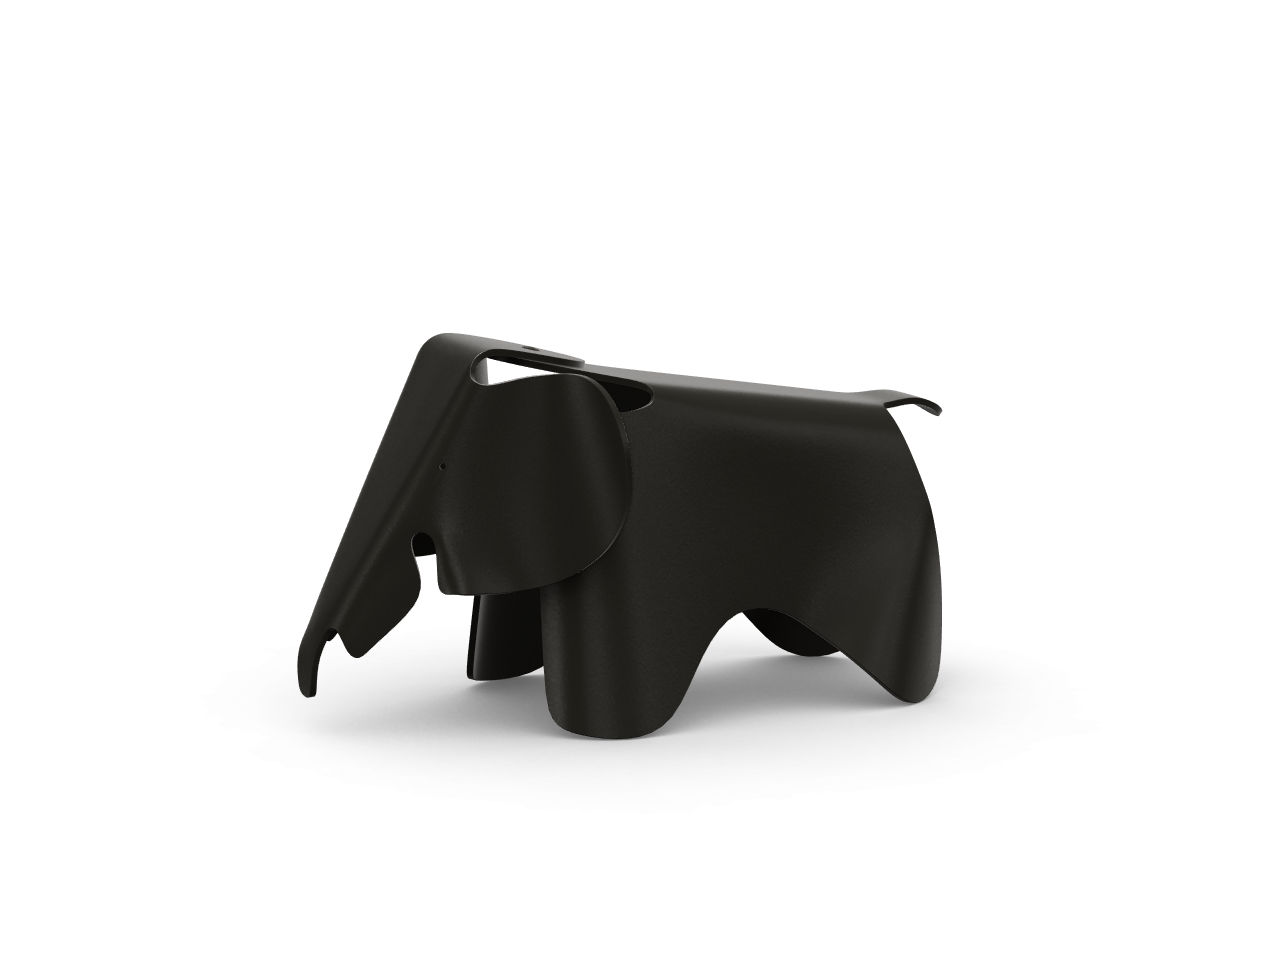 Elephant è un accessorio/sedia per bambini prodotta da Vitra, progettato da Charles e Ray Eames e proposto da Peverelli